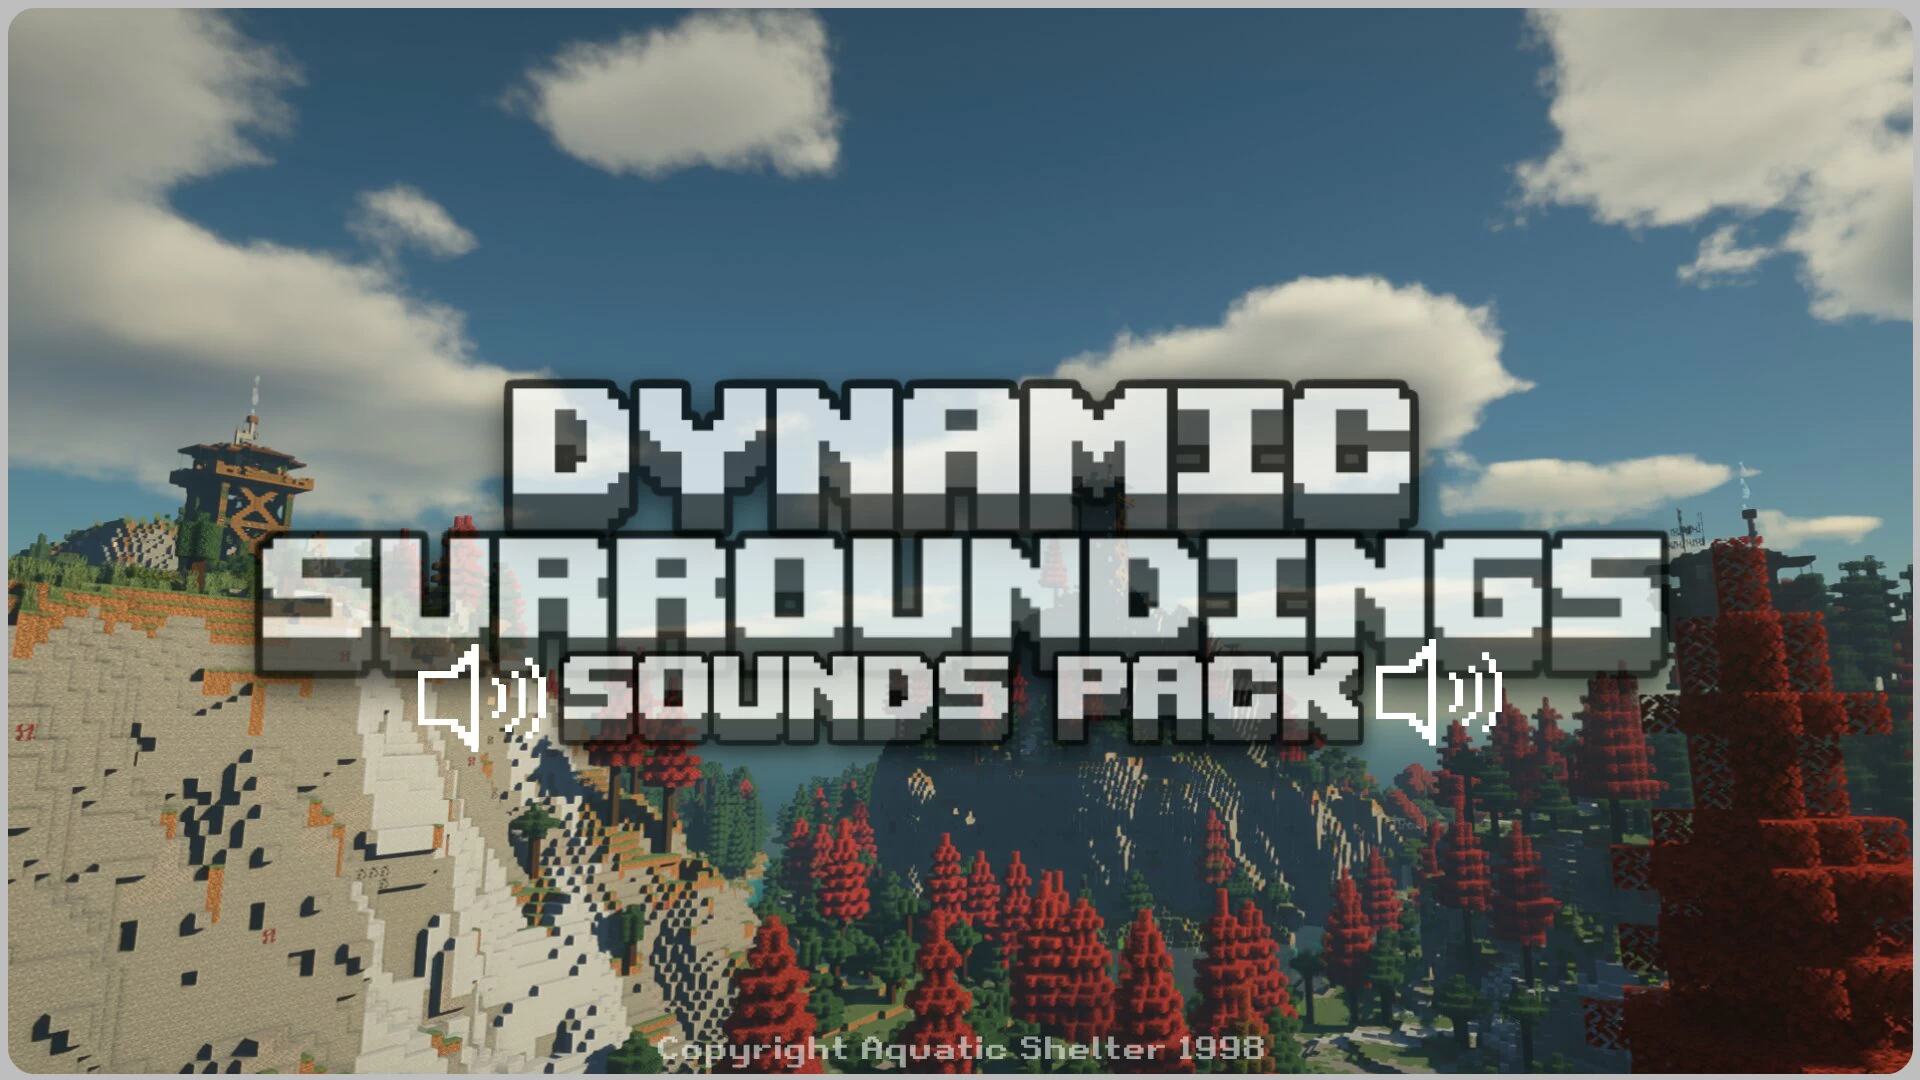 Dynamic Surroundings screenshot 1